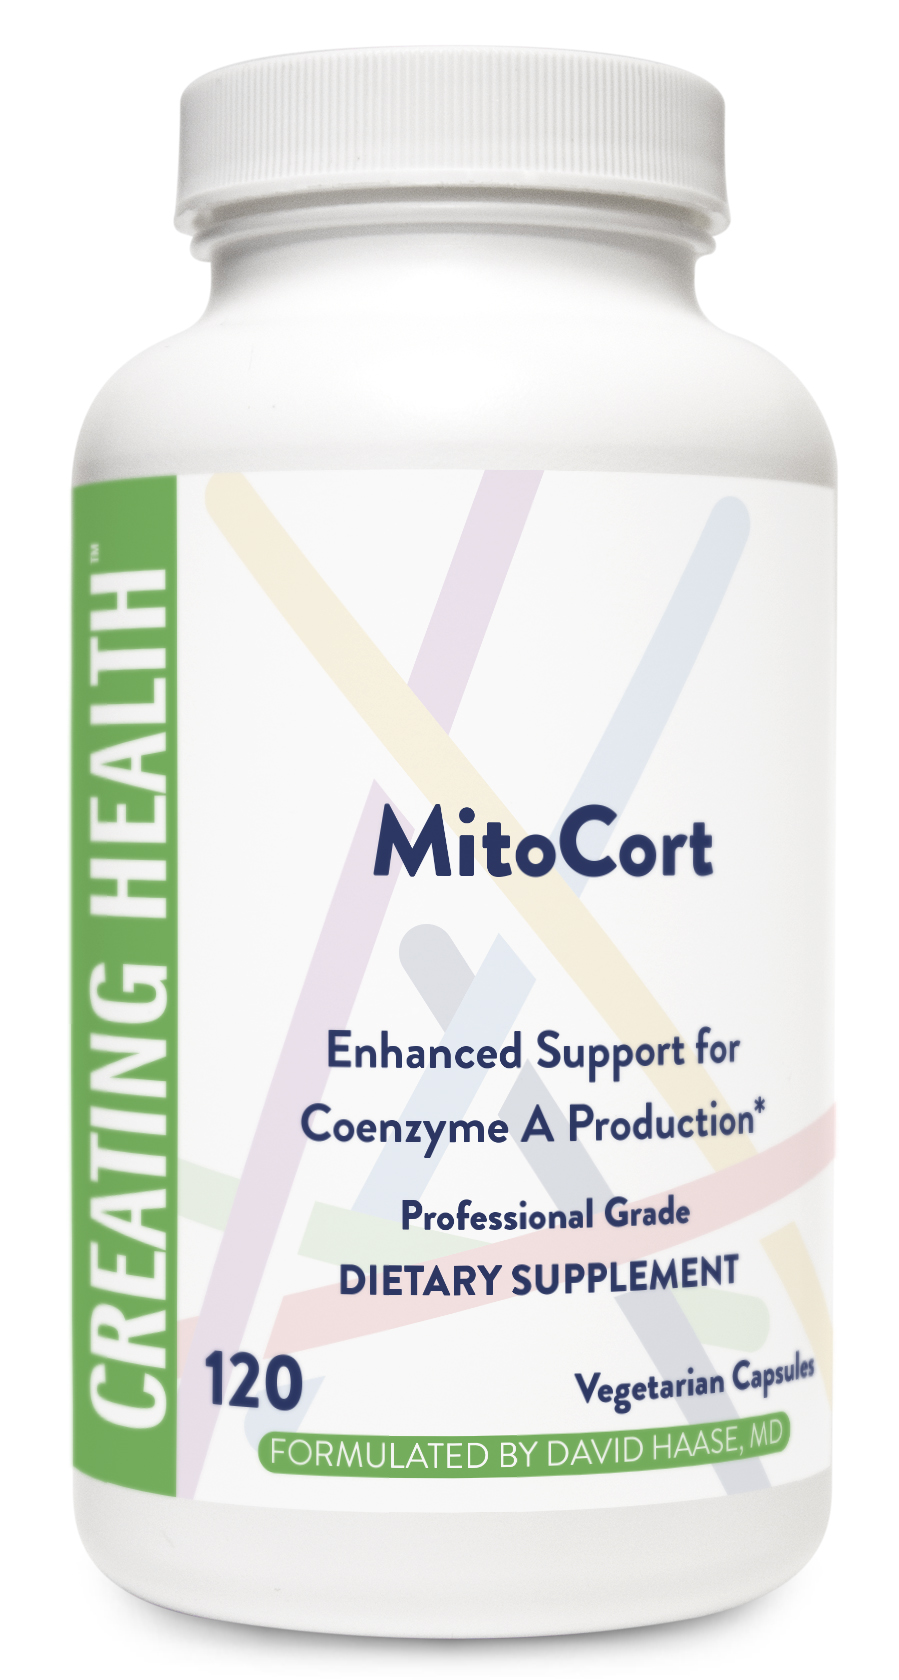 MitoCort